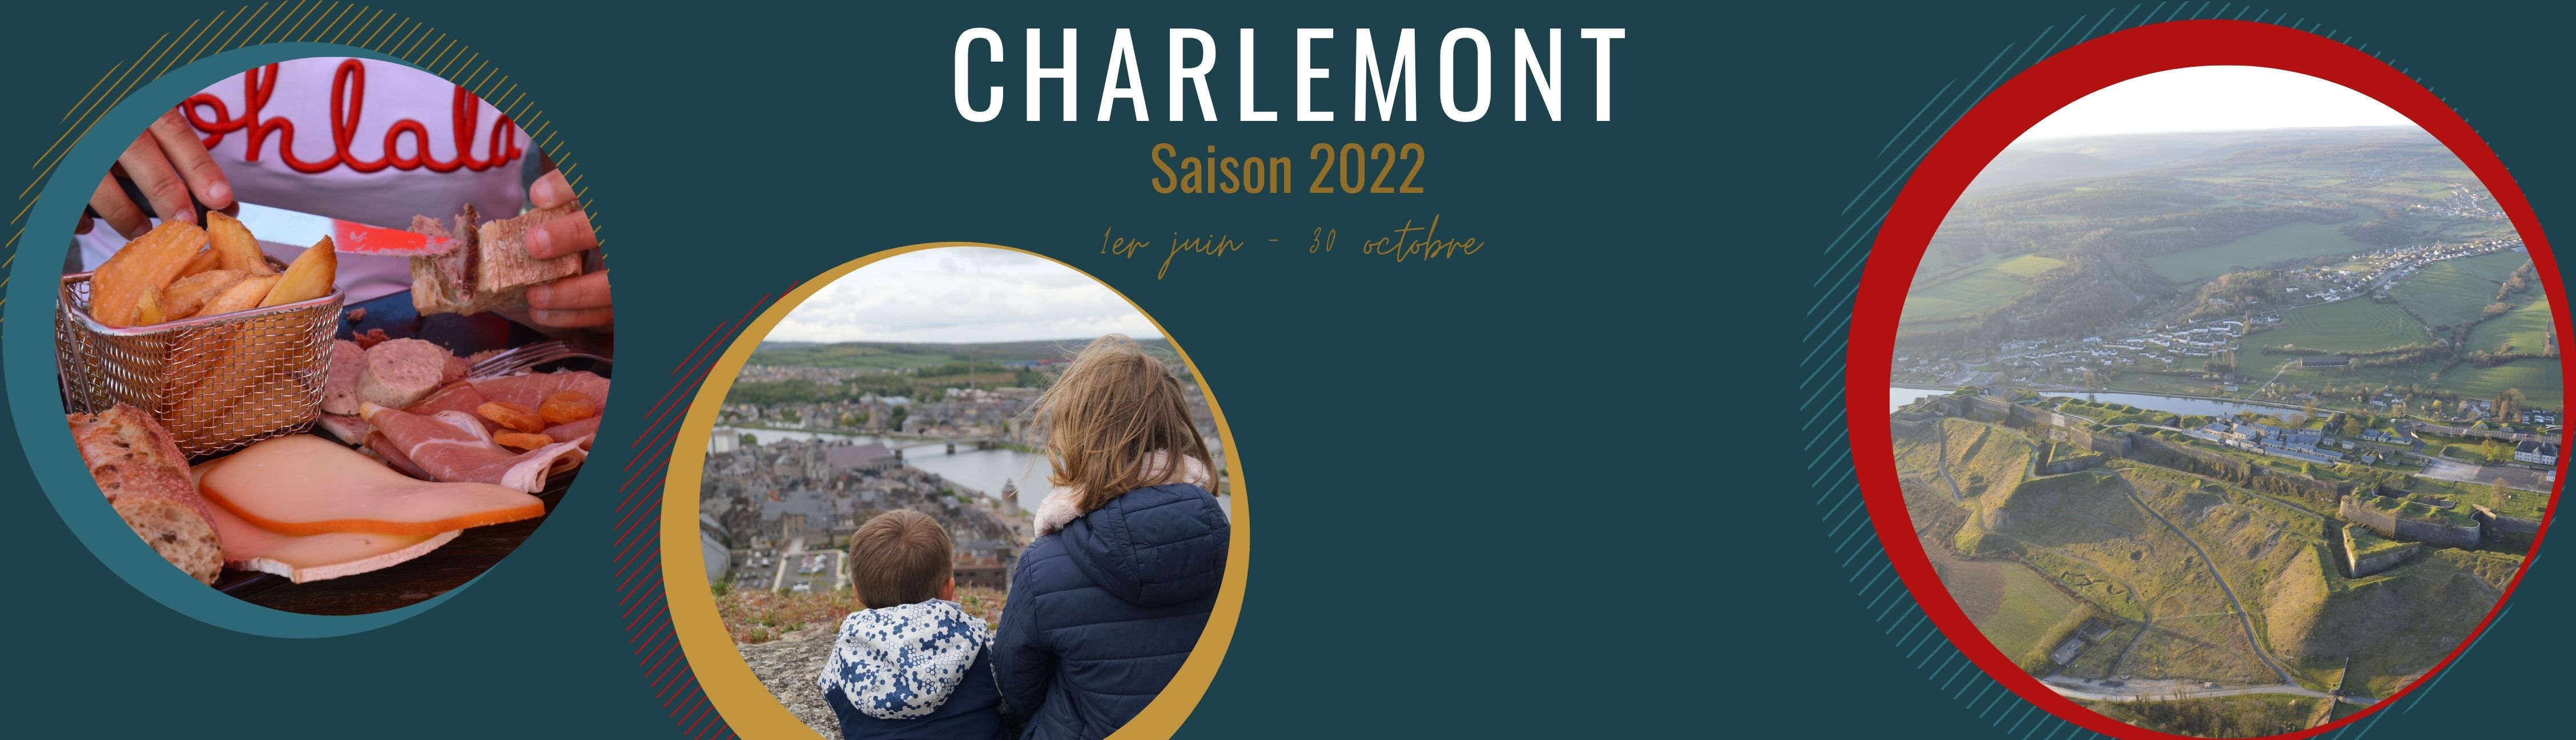 (Français) Saison 2022